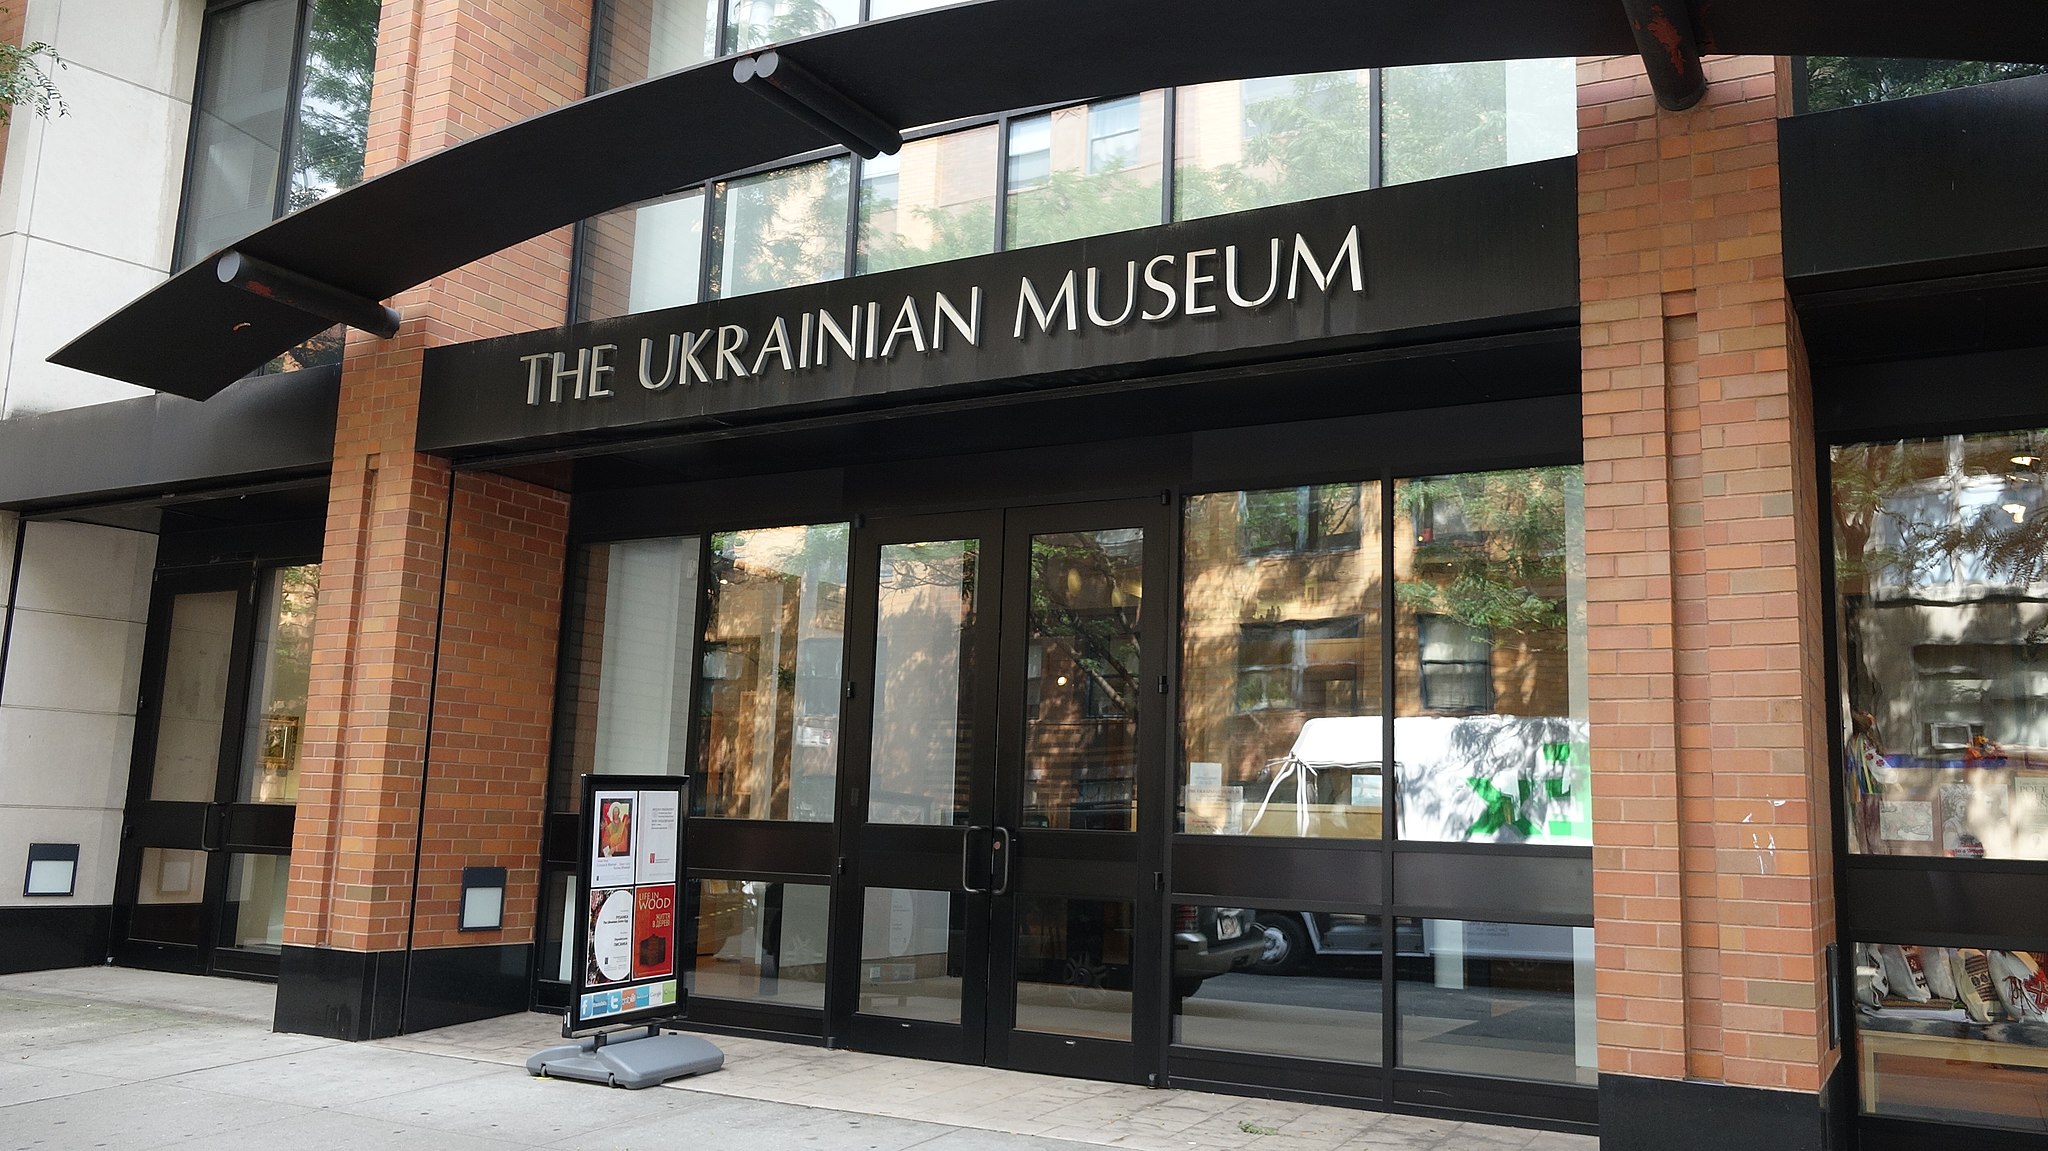 Ukrainian Museum in New York Appoints Peter Doroshenko as New Director –